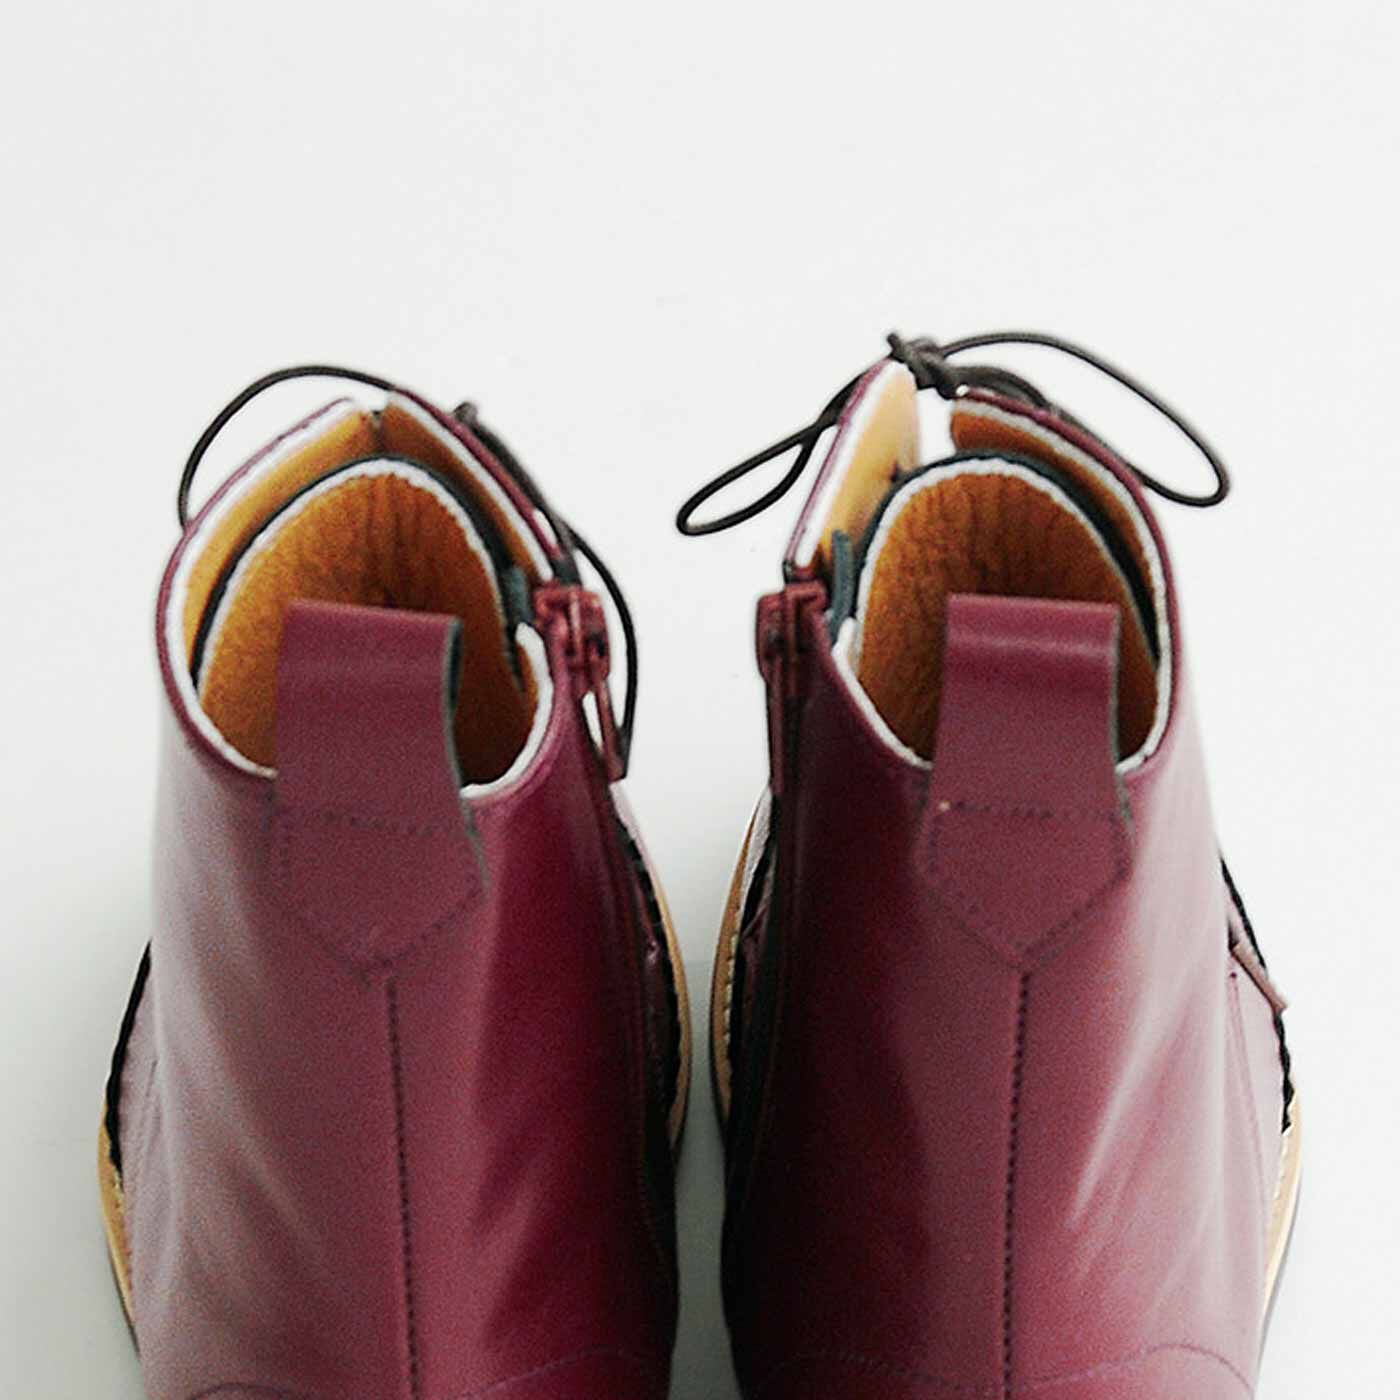 ＆Stories|長田靴職人が叶えた 理想の本革ウィングチップブーツ〈レッドブラウン〉[本革 ブーツ：日本製]|履き口のつまみ革で、脱ぎ履きもスムーズ。